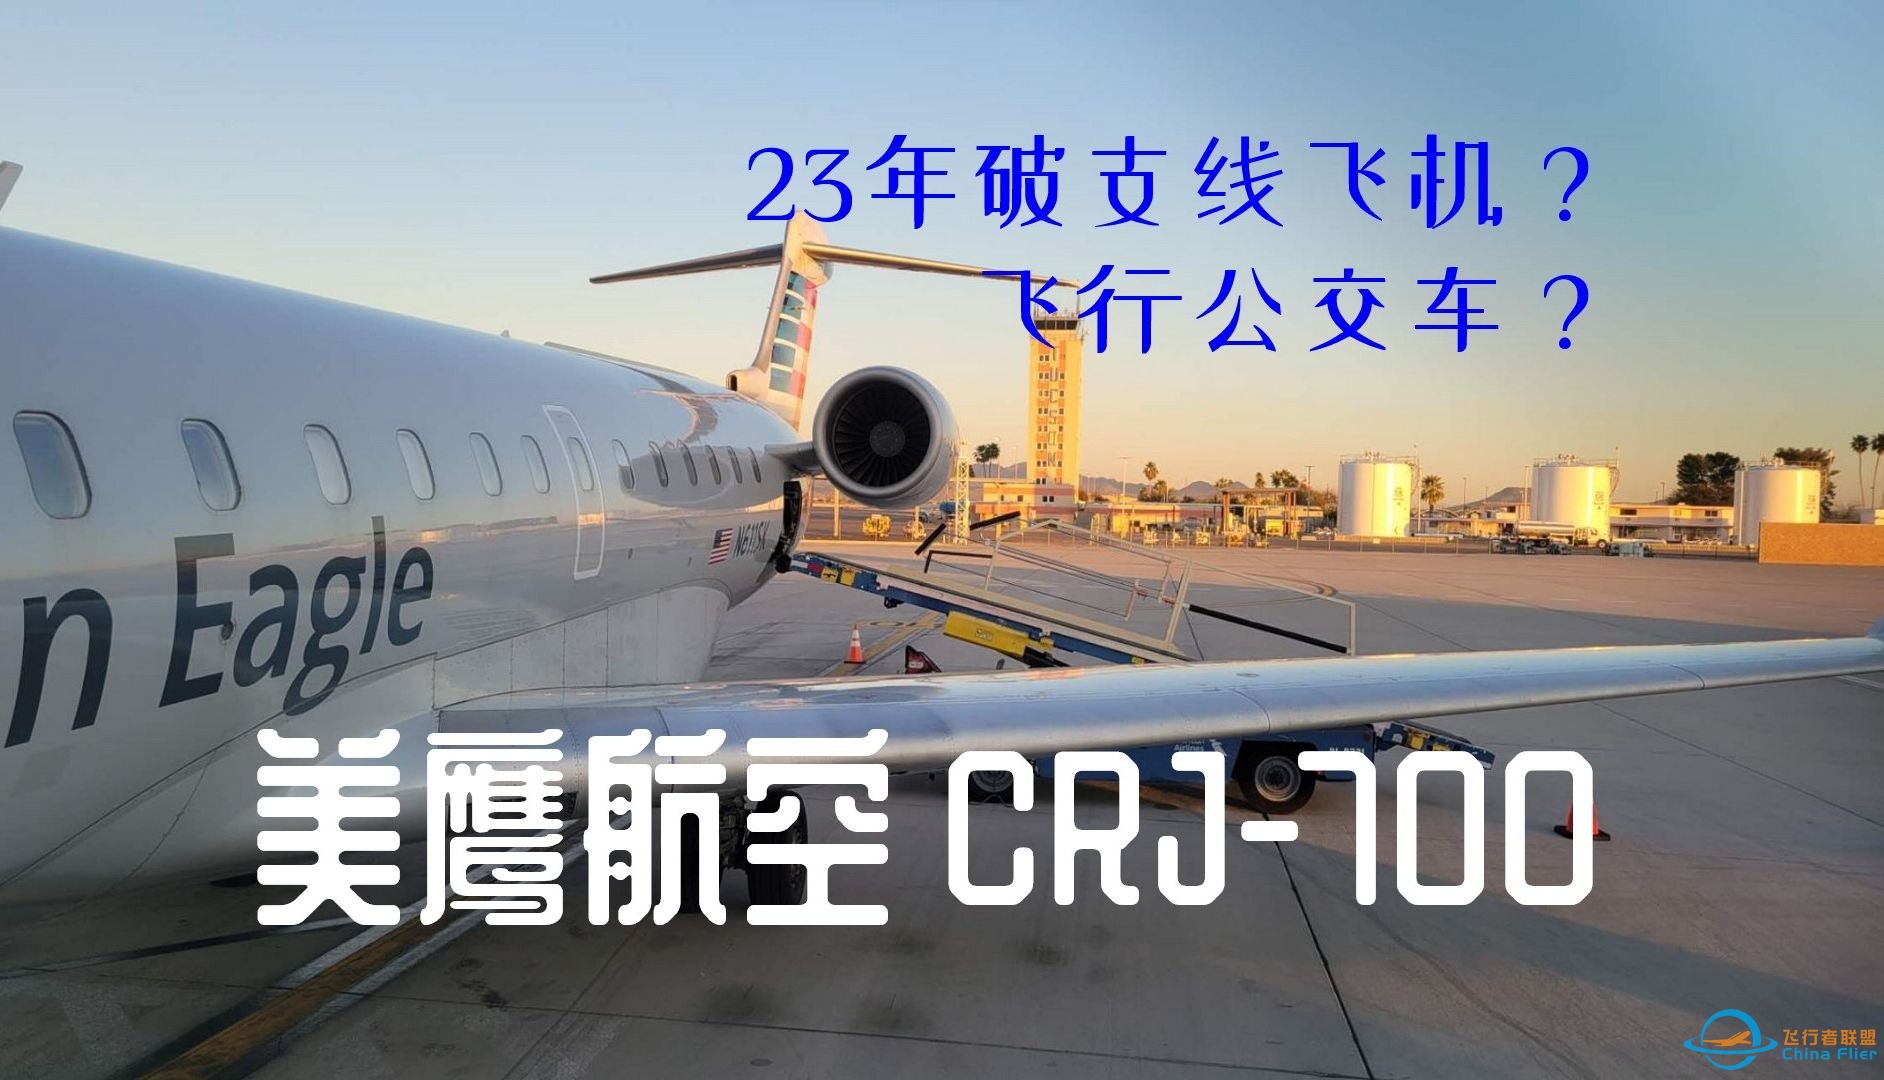 【飞行游记】长途大巴飞上天？美鹰航空CRJ-700区域航线飞行体验-5869 